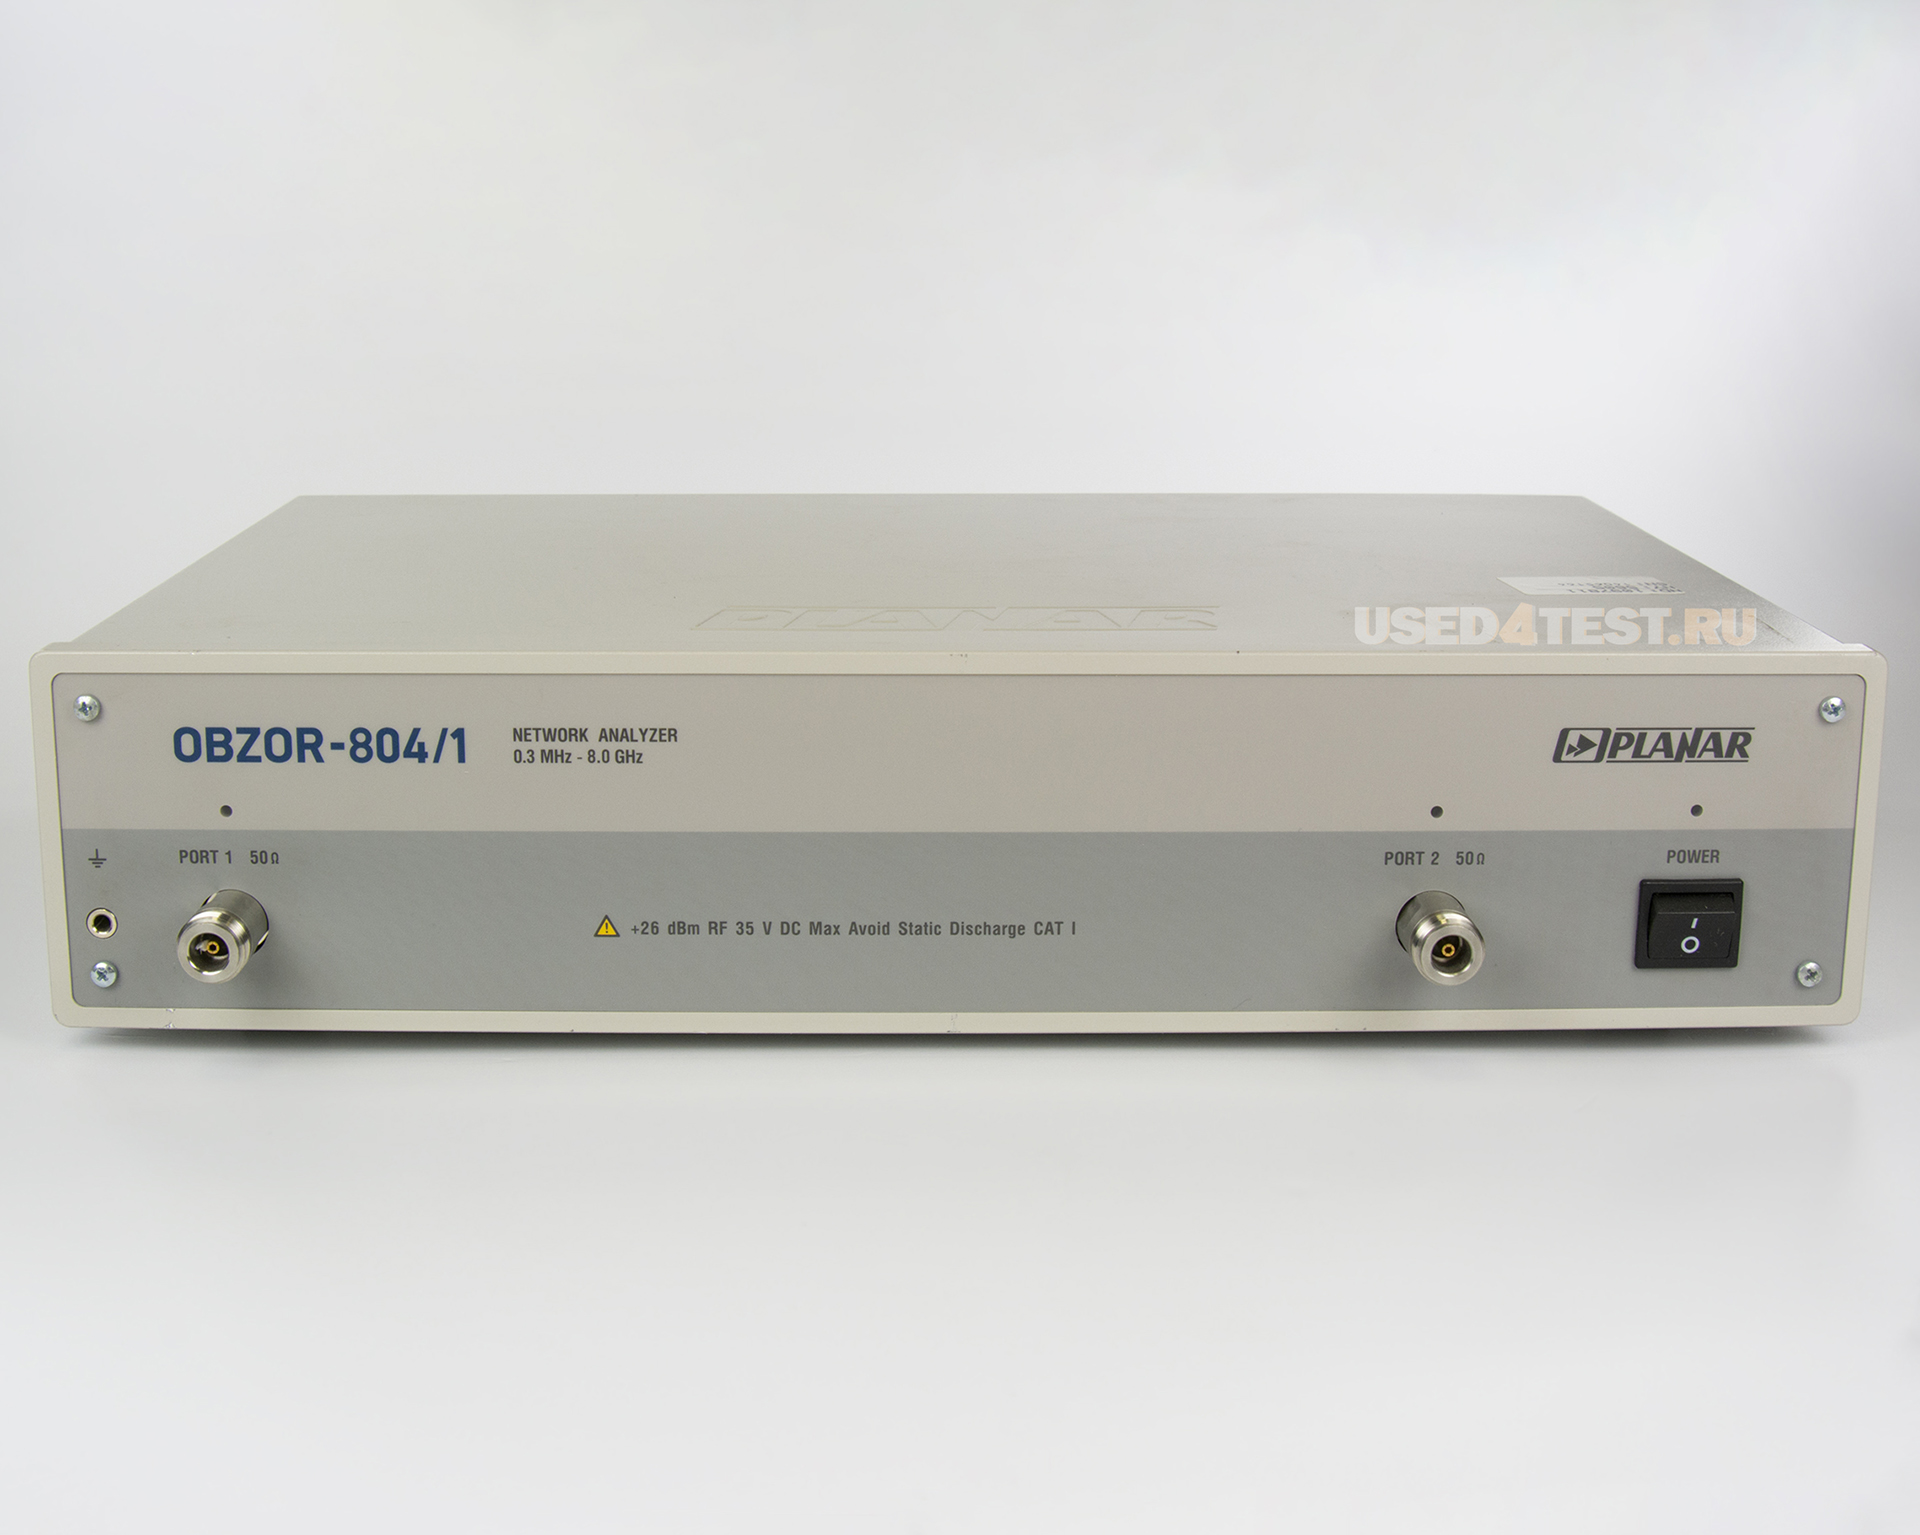 Векторный анализатор цепей
 Планар ОБЗОР-804/1
 с диапазоном частот от 300 кГц до 8 ГГц 
 
 
 
 

 Стоимость указана в Рублях DDP Москва по безналичному расчету включая НДС 20%
